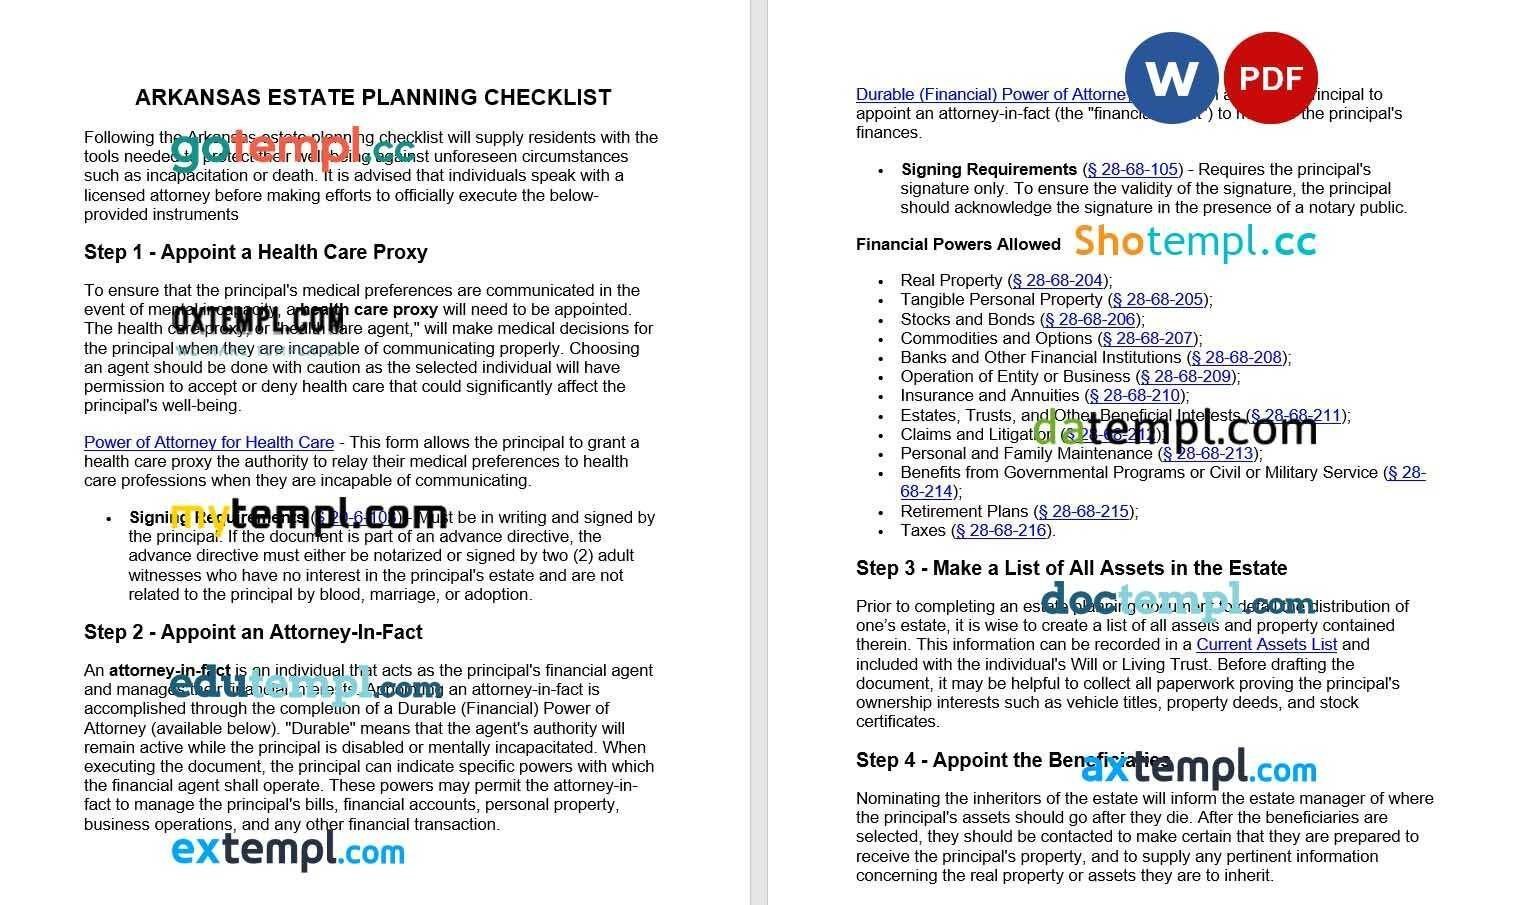 Arkansas Estate Planning Checklist example, fully editable